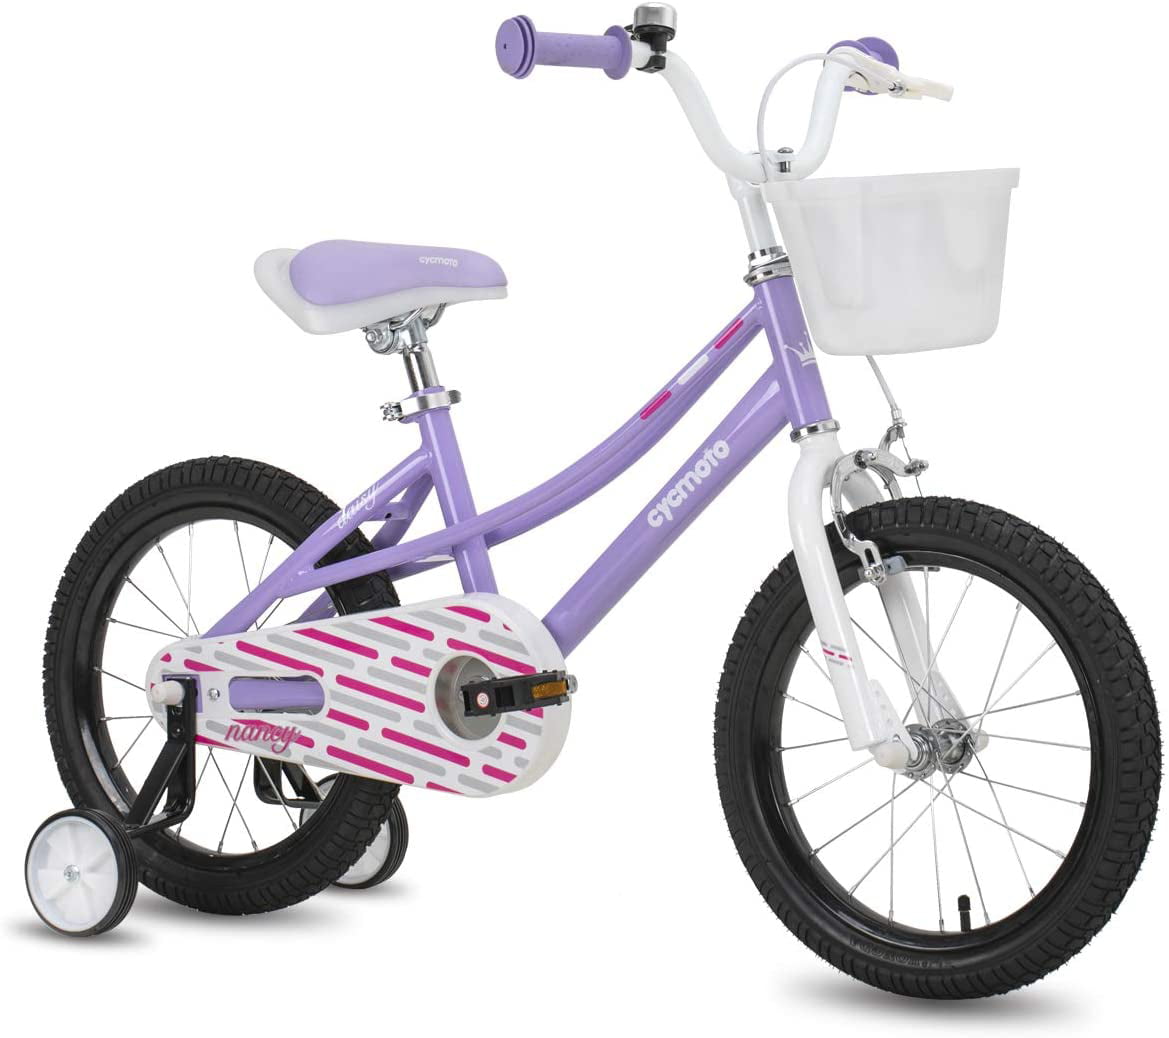 14 "Kids Bike Bicycle Boys & Girls mit Stützrädern Scheibenbremse 